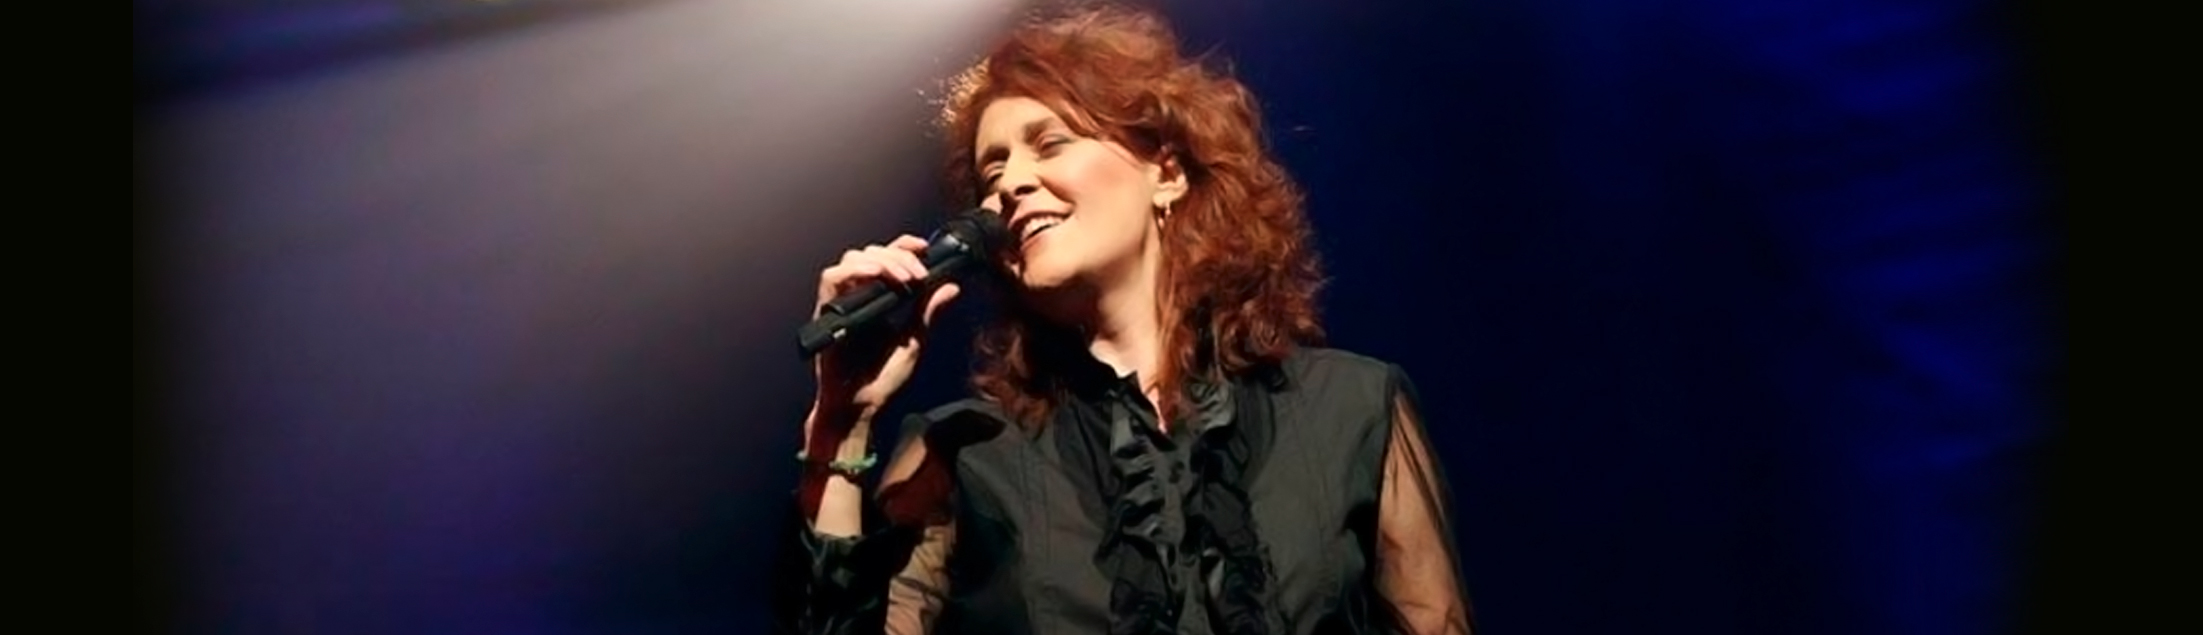 Joanna no show 'De volta ao começo', comemorando seus 40 anos de carreira